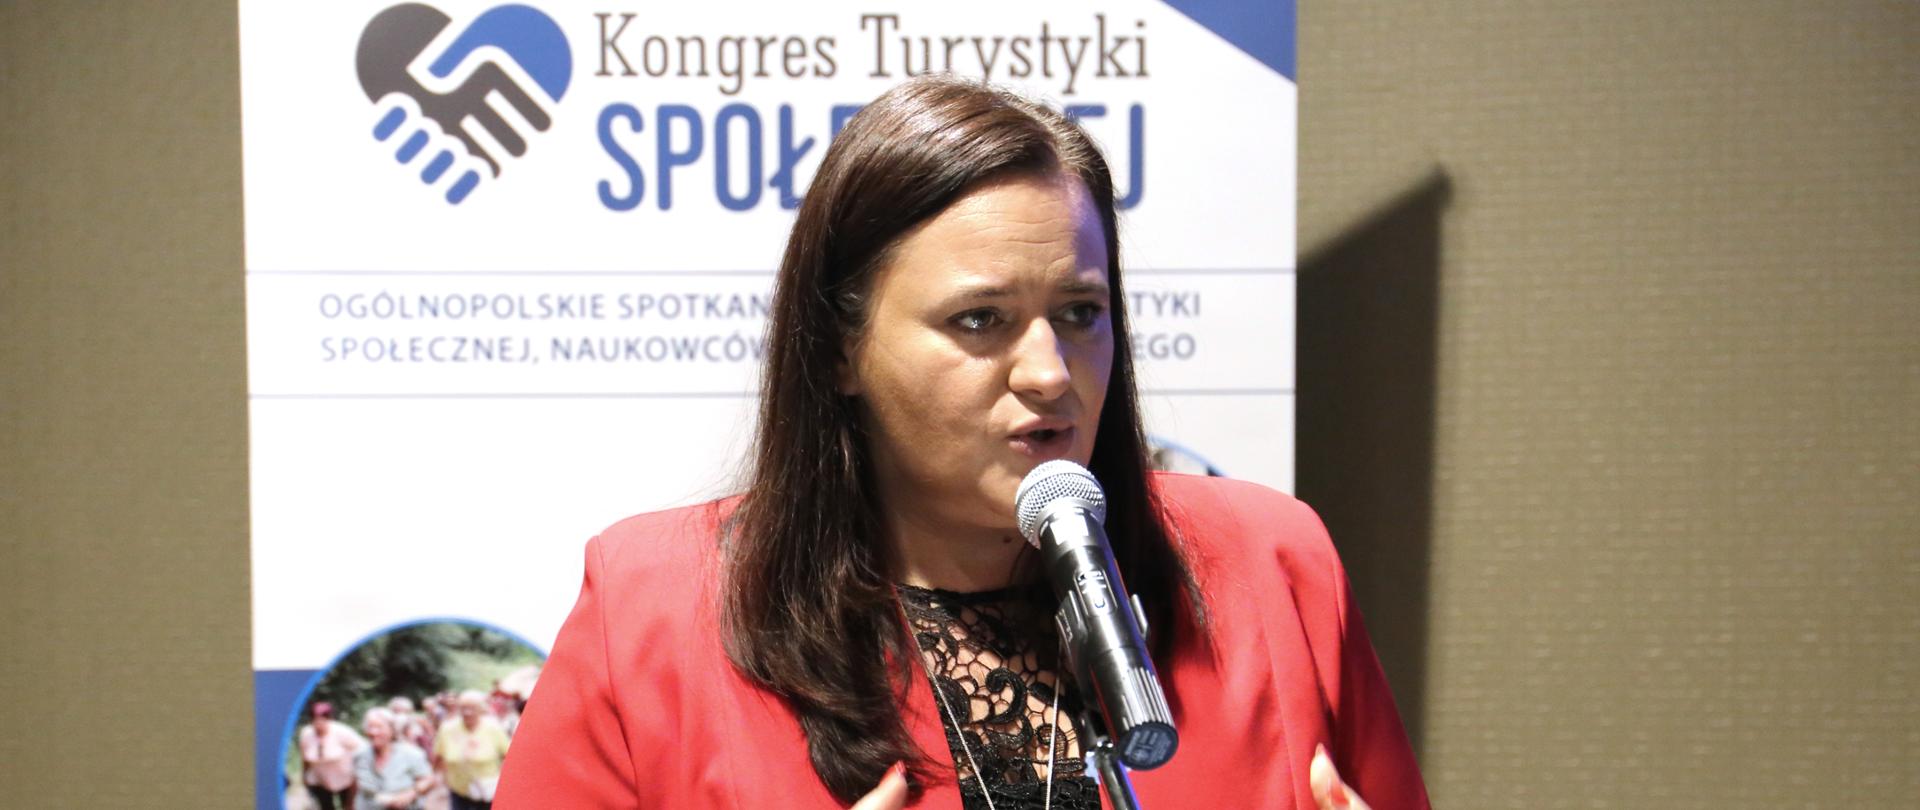 wiceminister Małgorzata Jarosińska-Jedynak mówi do mikrofonu